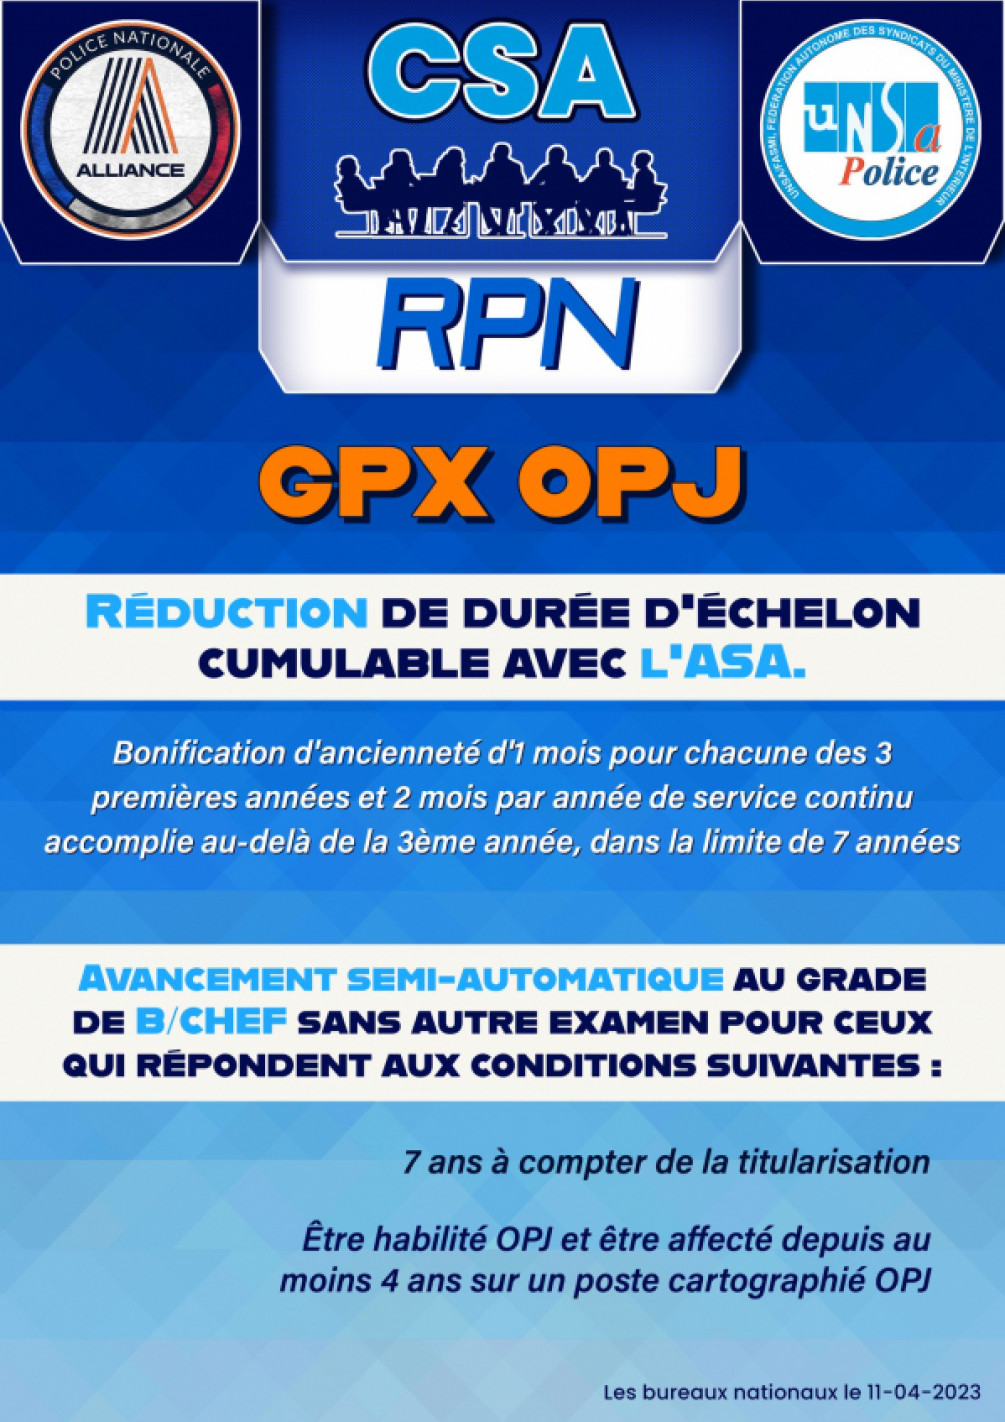 CSARPN - REDUCTION DE DUREE D'ECHELON POUR LES GPX OPJ